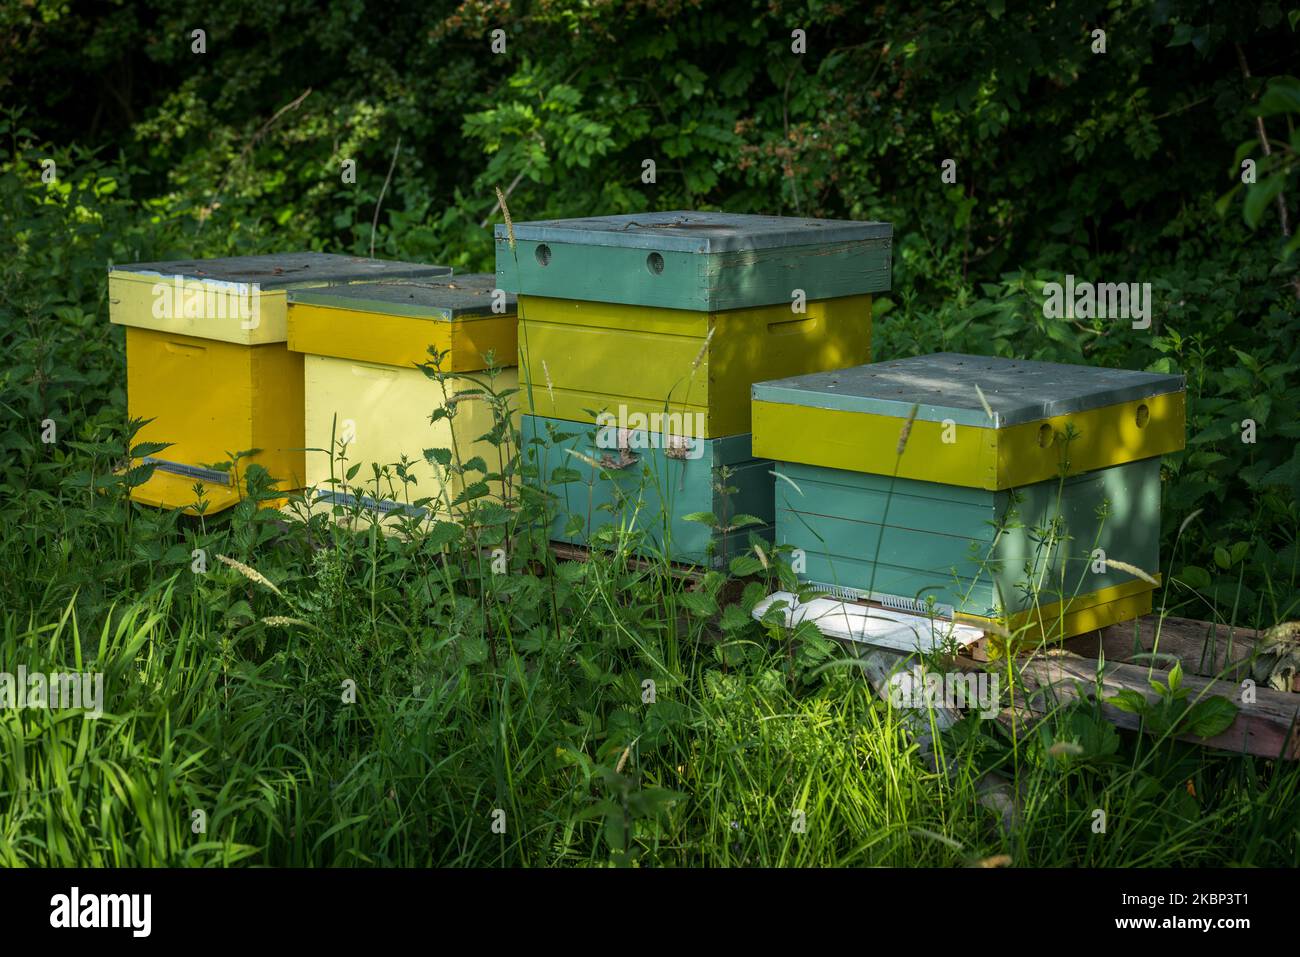 Bestäubung durch Honigbienen bei der Gemeinschaft unterstützte Landwirtschaft (CSA) am 21. Mai 2020 in Gent, Belgien. Der EU-Green-Deal fordert Maßnahmen zur Erhaltung, nachhaltigen Nutzung und Wiederherstellung, die durch die Schaffung nachhaltiger Arbeitsplätze und eines nachhaltigen Wachstums wirtschaftliche Vorteile für die lokalen Gemeinschaften bringen werden. Jährlich werden 20 Milliarden Euro an Mitteln für die biologische Vielfalt aus verschiedenen Quellen bereitgestellt, darunter EU-Mittel sowie nationale und private Ressourcen.die Vereinten Nationen haben den 22. Mai zum Internationalen Tag für die biologische Vielfalt (IDB) ausgerufen, um das Verständnis und das Bewusstsein für Biodiversitätsfragen zu stärken. (Foto von Jonat Stockfoto